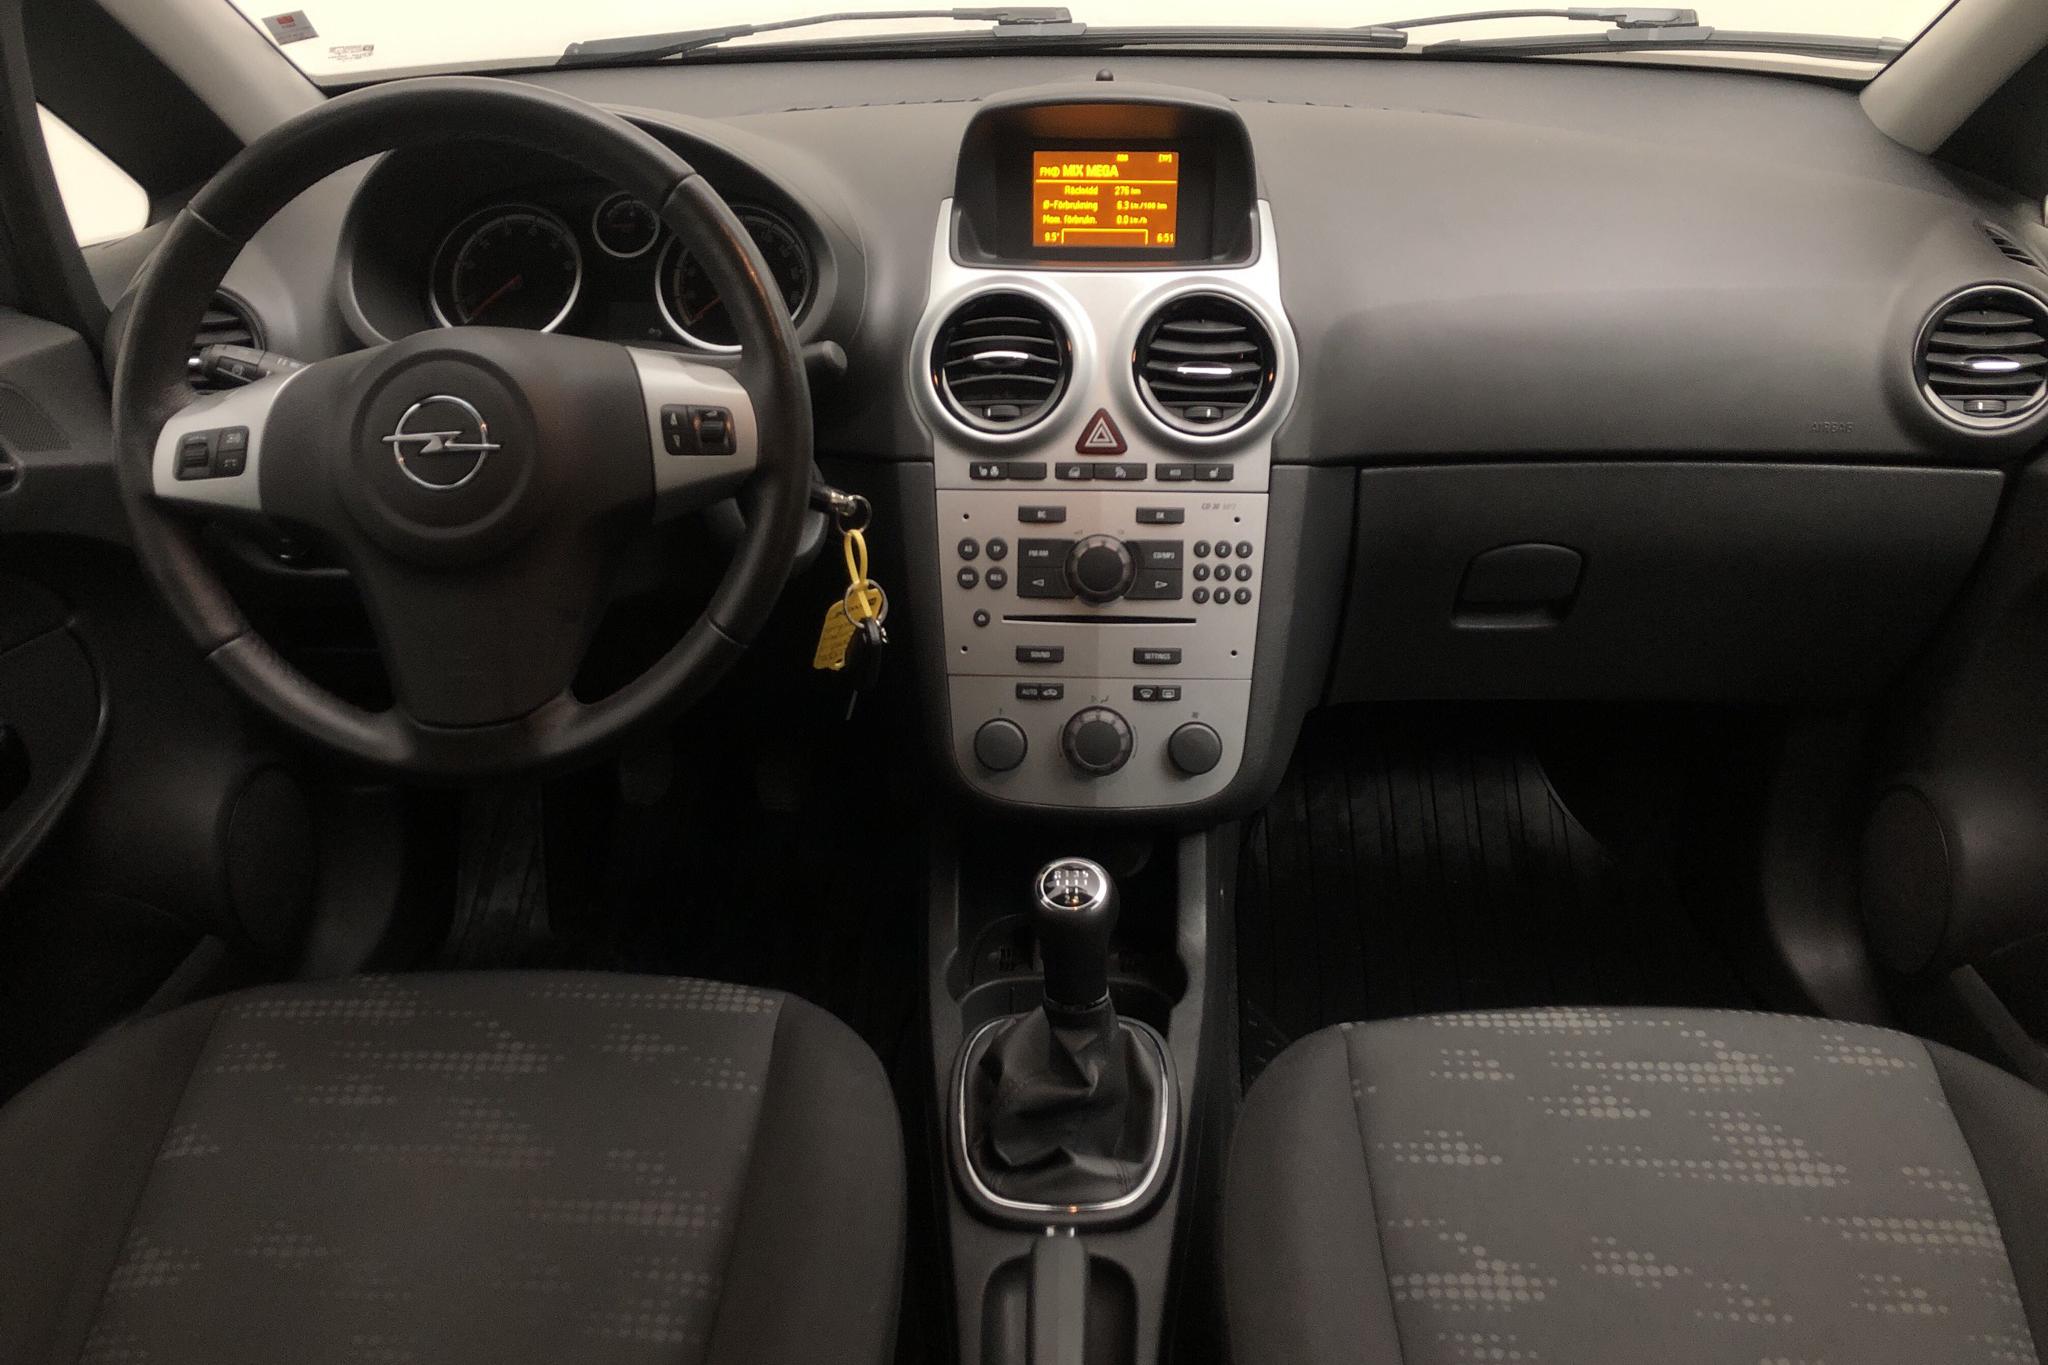 Opel Corsa 1.2 Twinport 5dr (85hk) - 9 969 mil - Manuell - grå - 2012